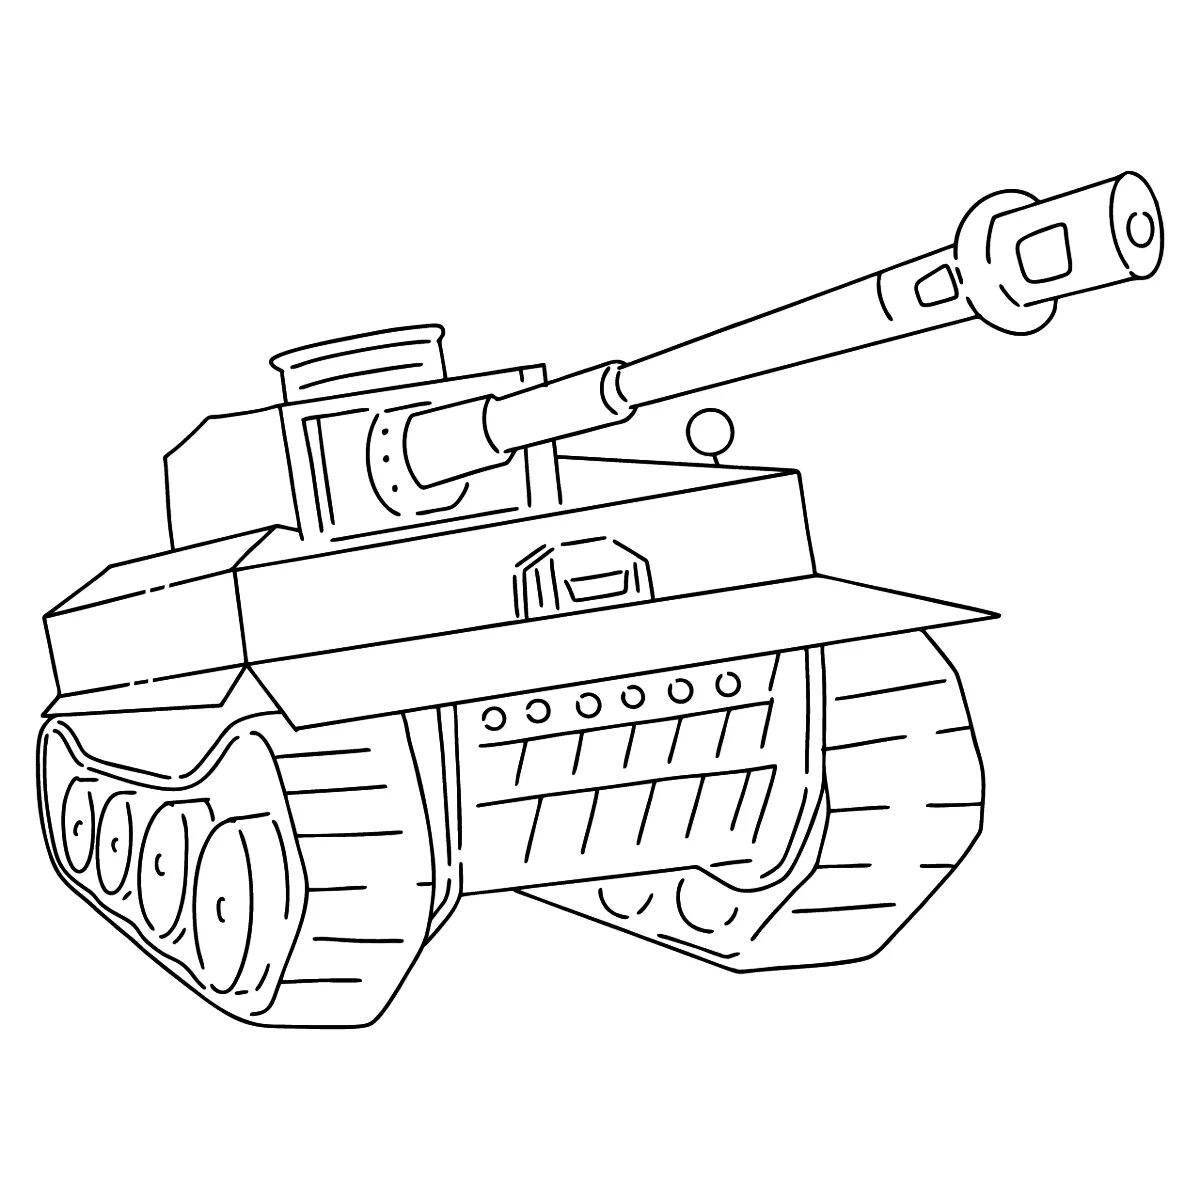 Elegant panther tank coloring